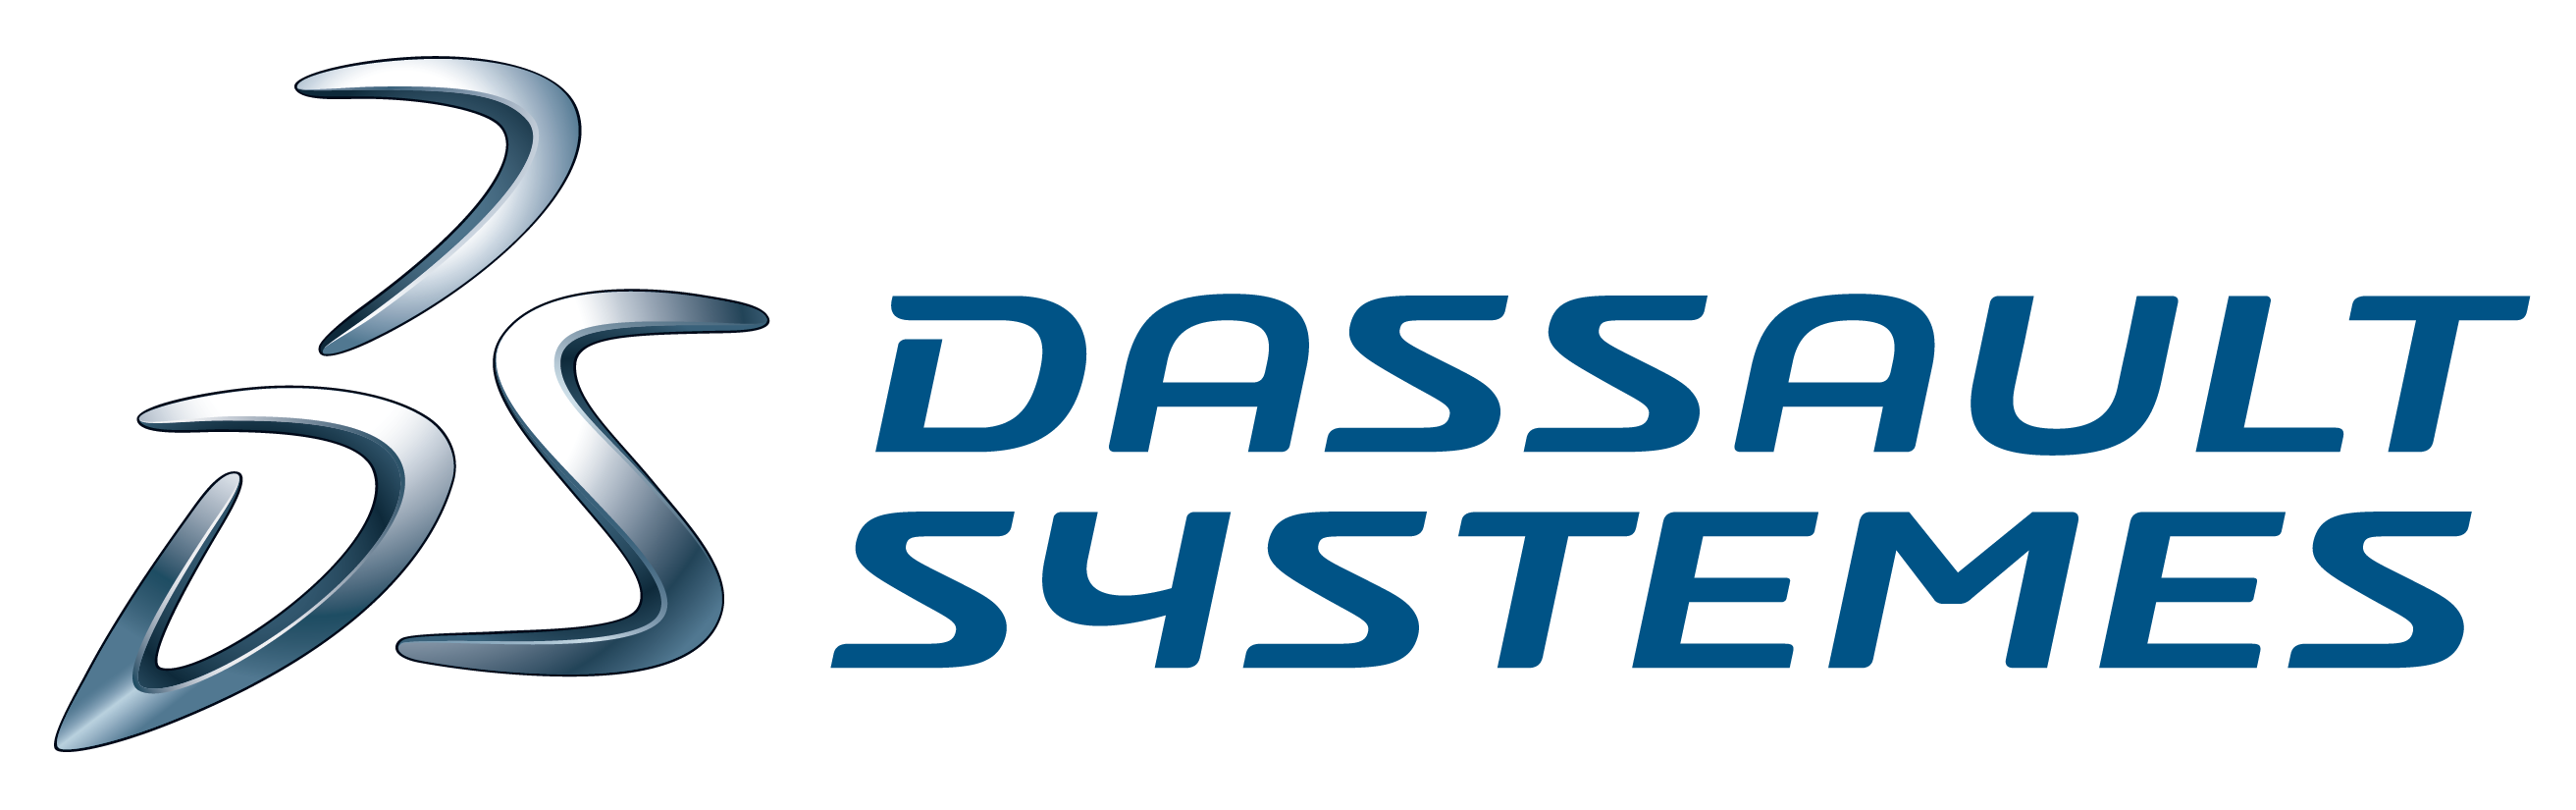 Dassault systems